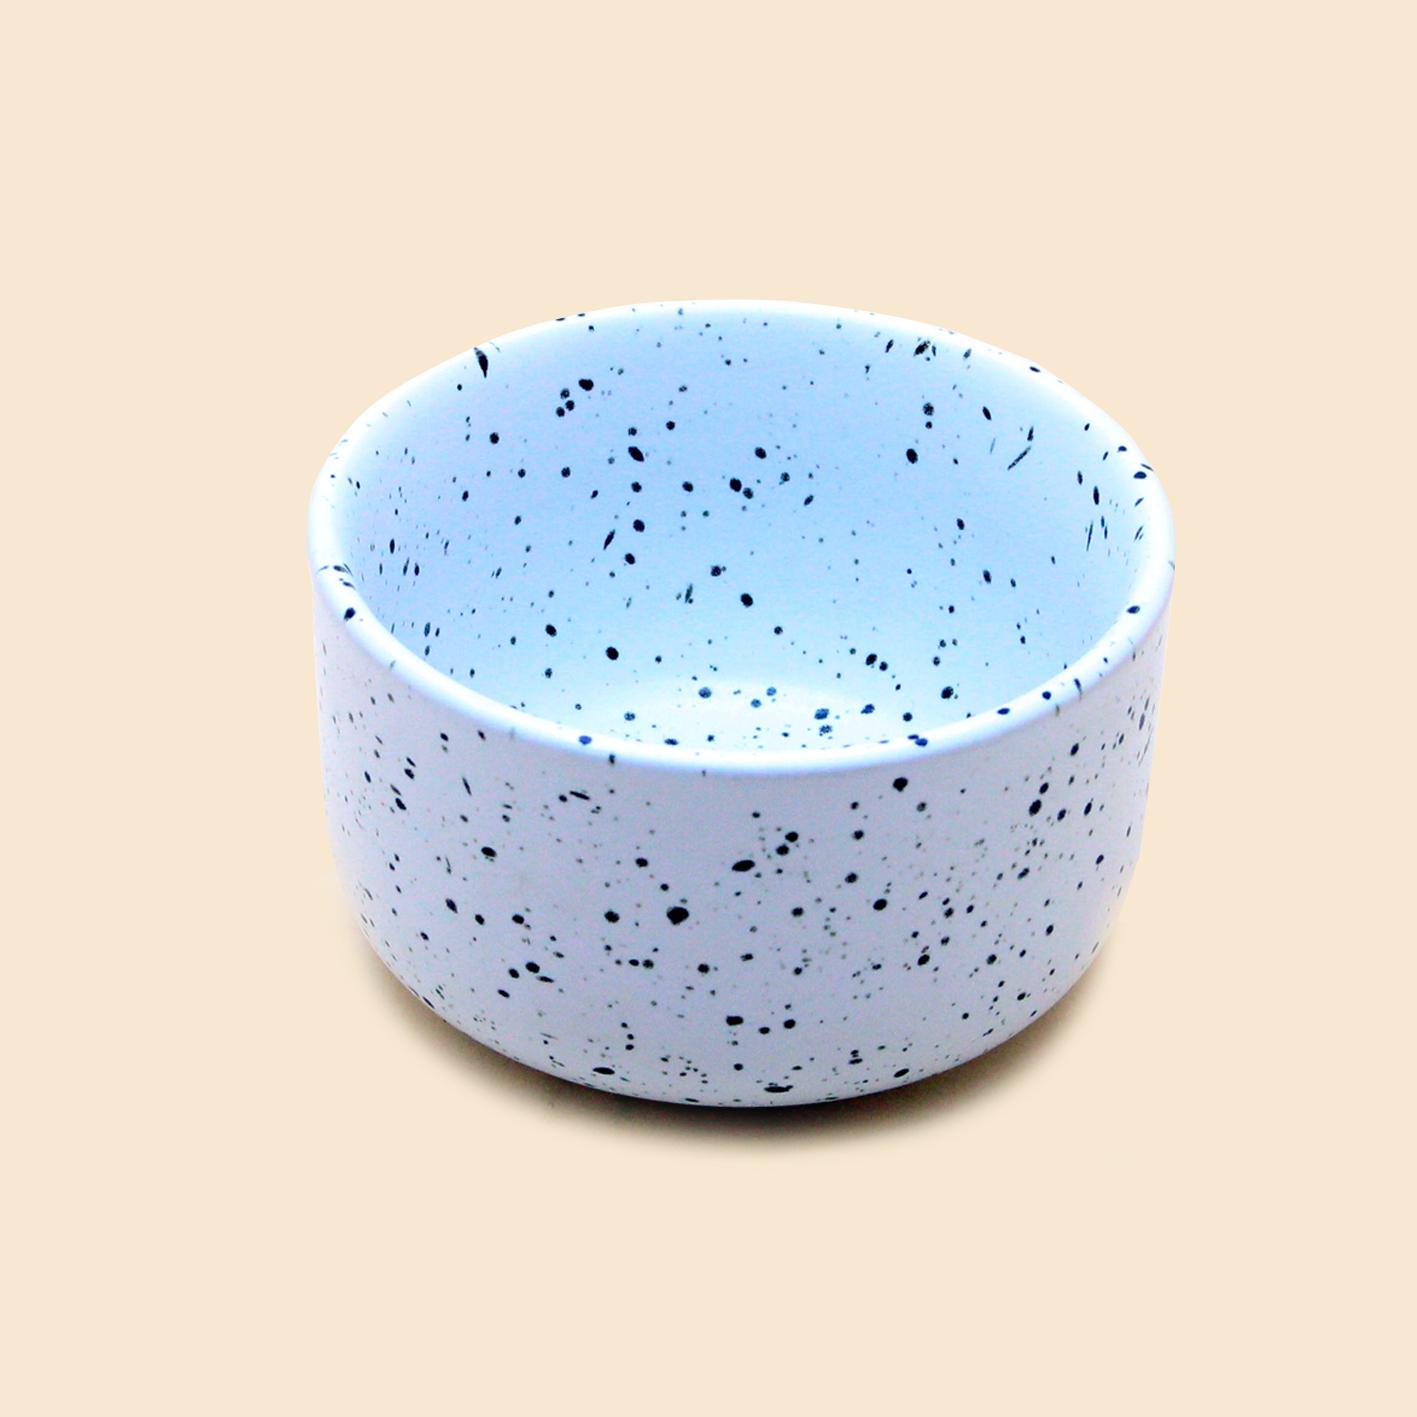 Tô gốm họa tiết vân đá 10.5*6.5 - Dotty ceramic bowl